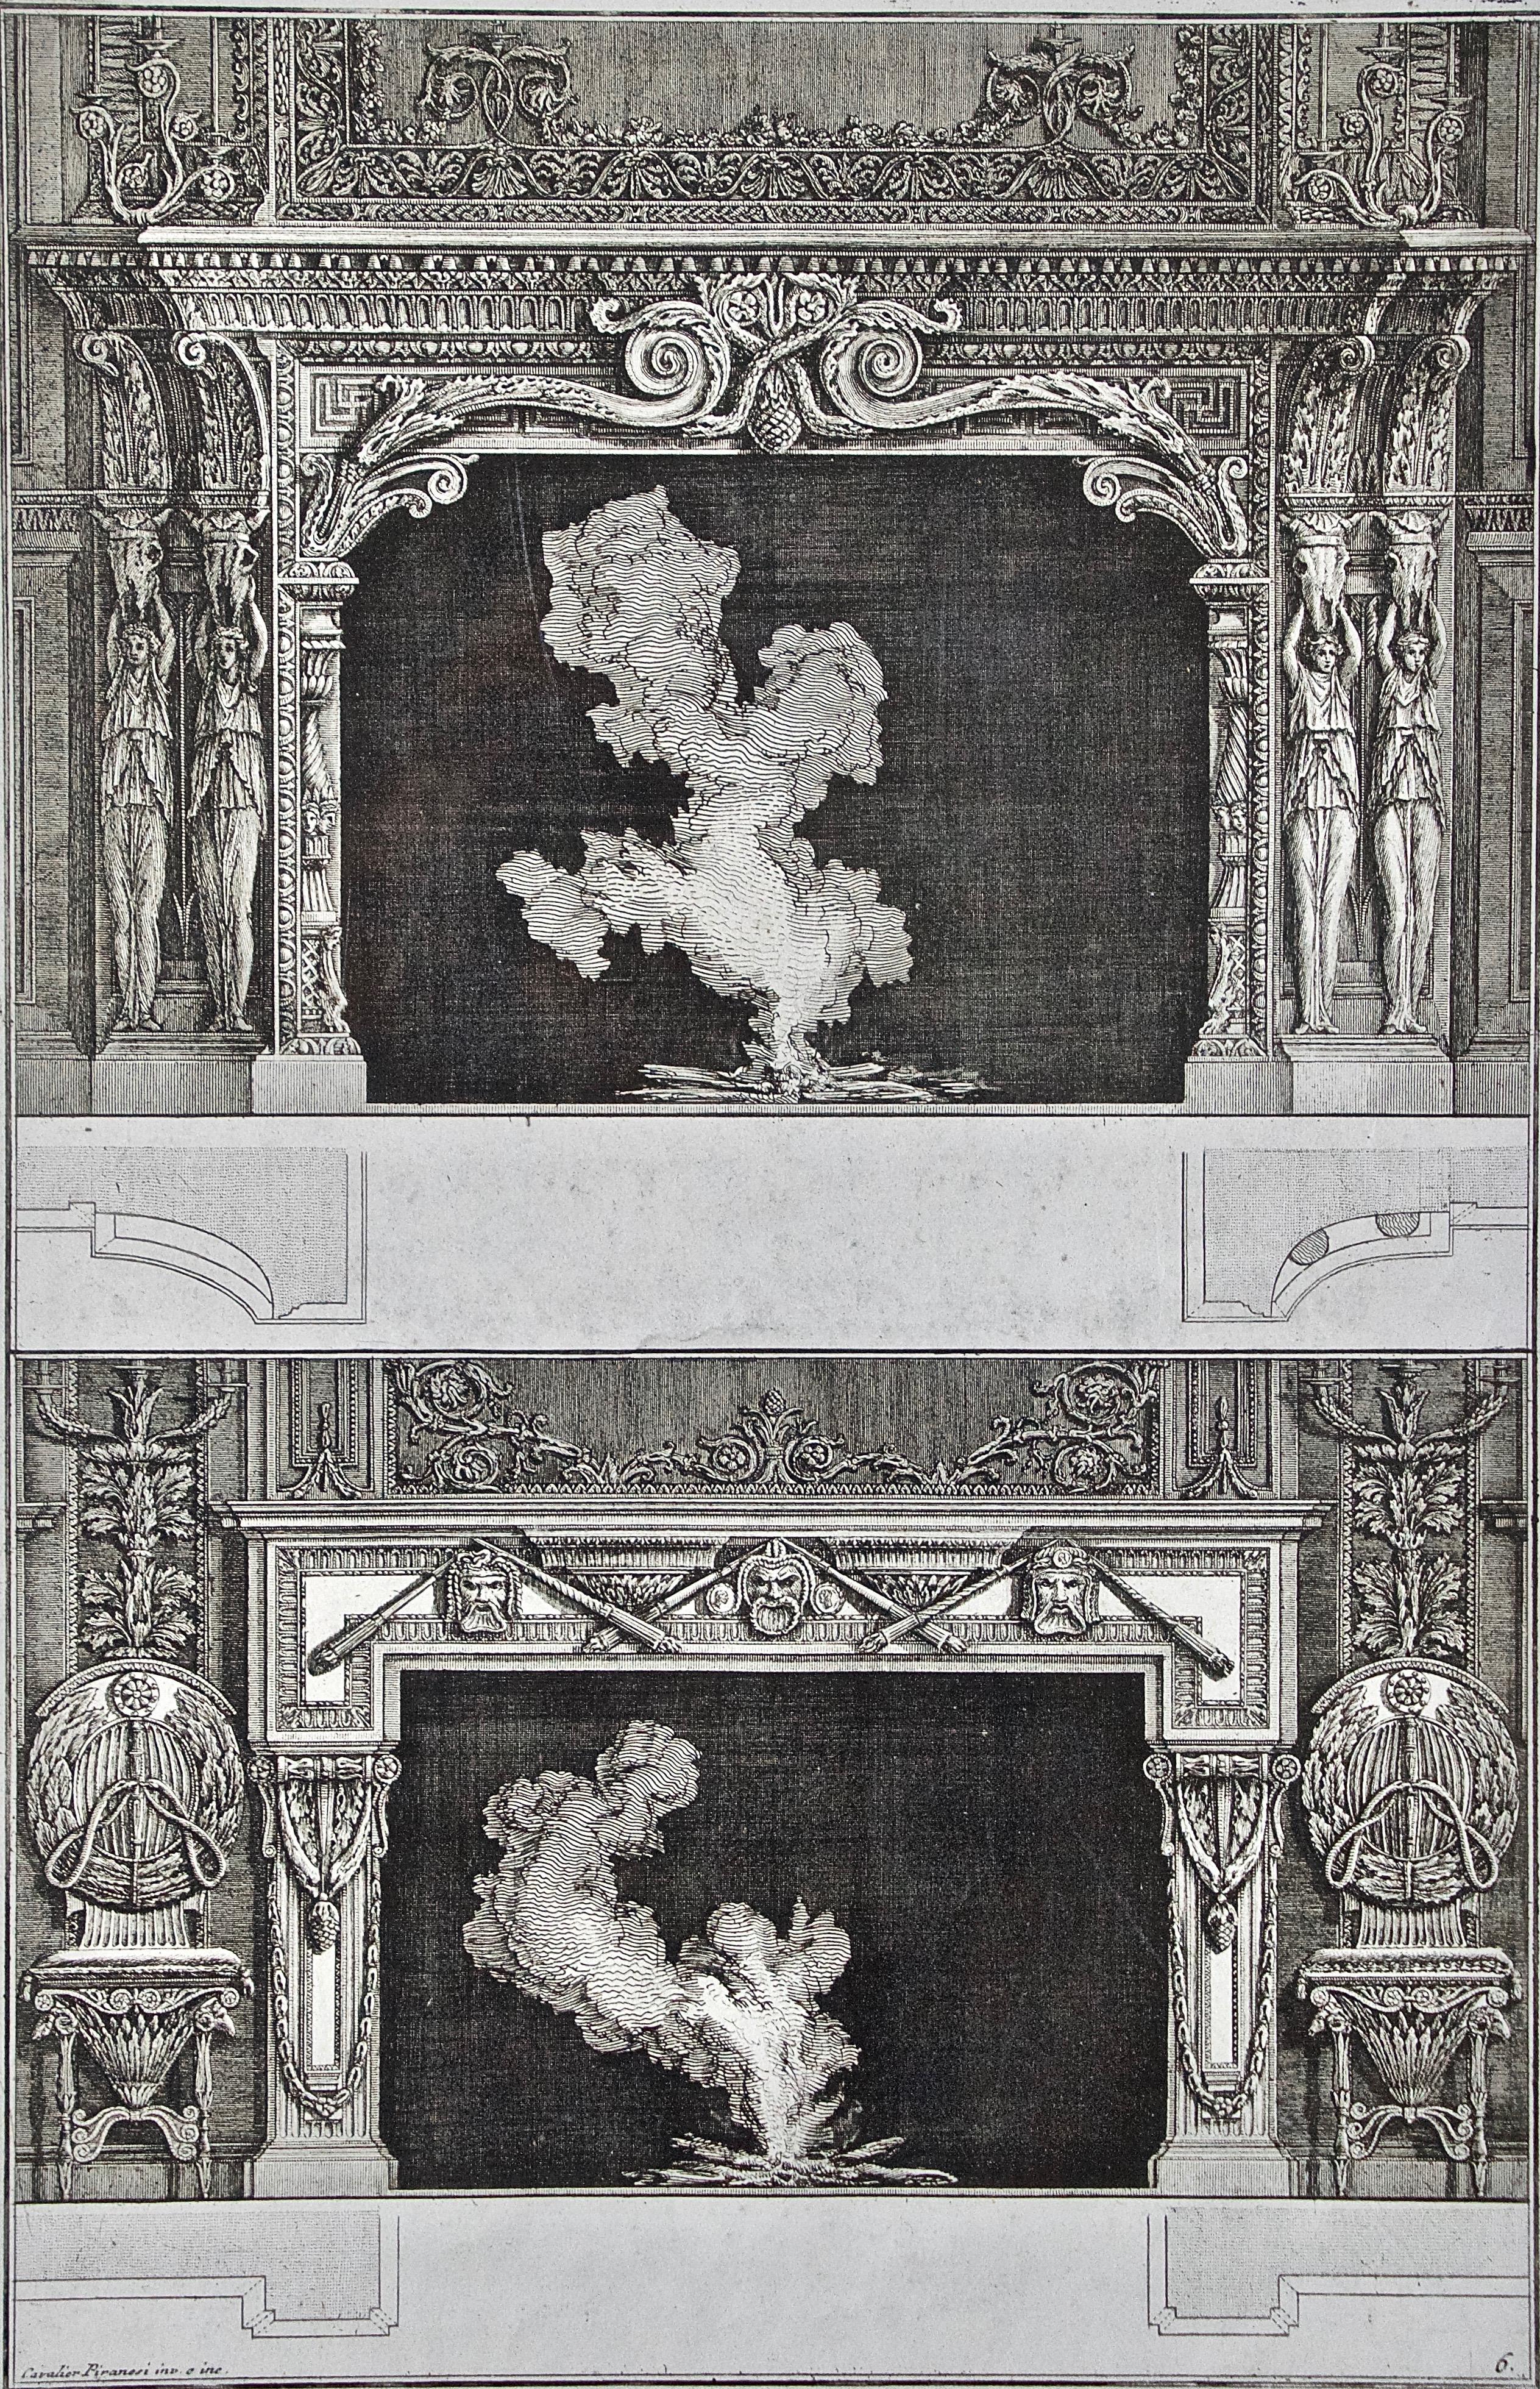 Designs de cheminée Piranesi du 18e siècle basés sur les styles architecturaux anciens - Print de Giovanni Battista Piranesi